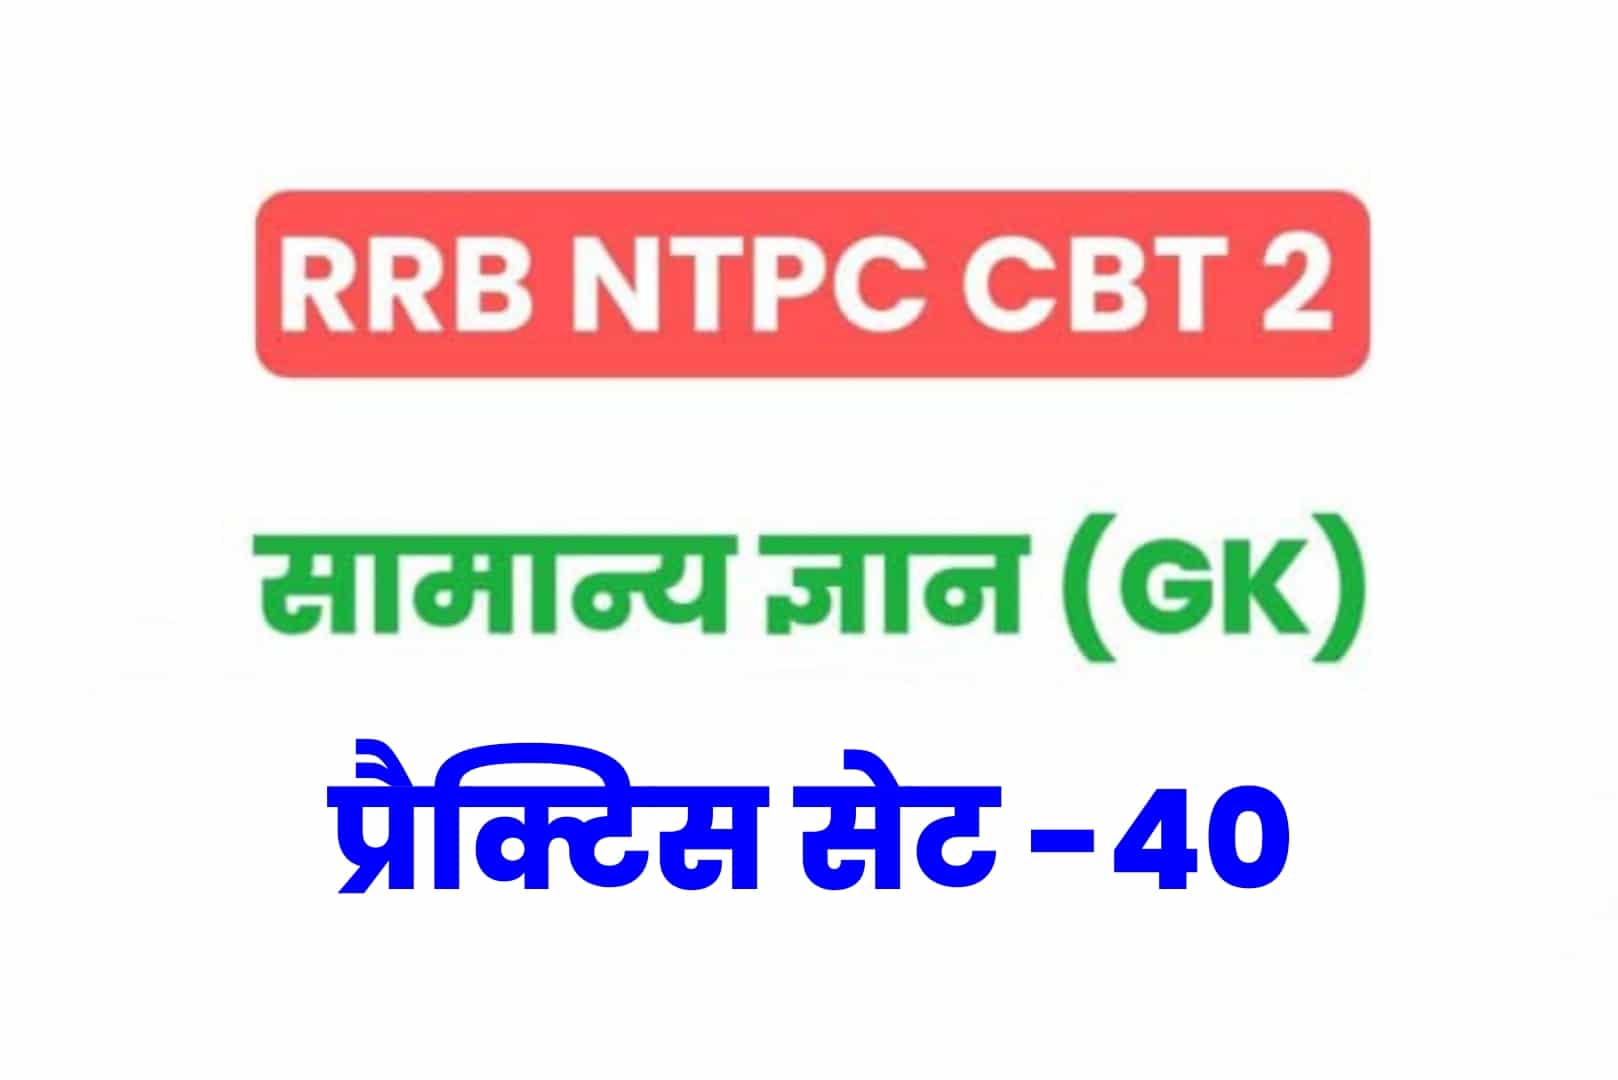 RRB NTPC CBT 2 GK प्रैक्टिस सेट 40: परीक्षा में जाने से पहले अवश्य पढें सामान्य ज्ञान के 25 मुख्य MCQ